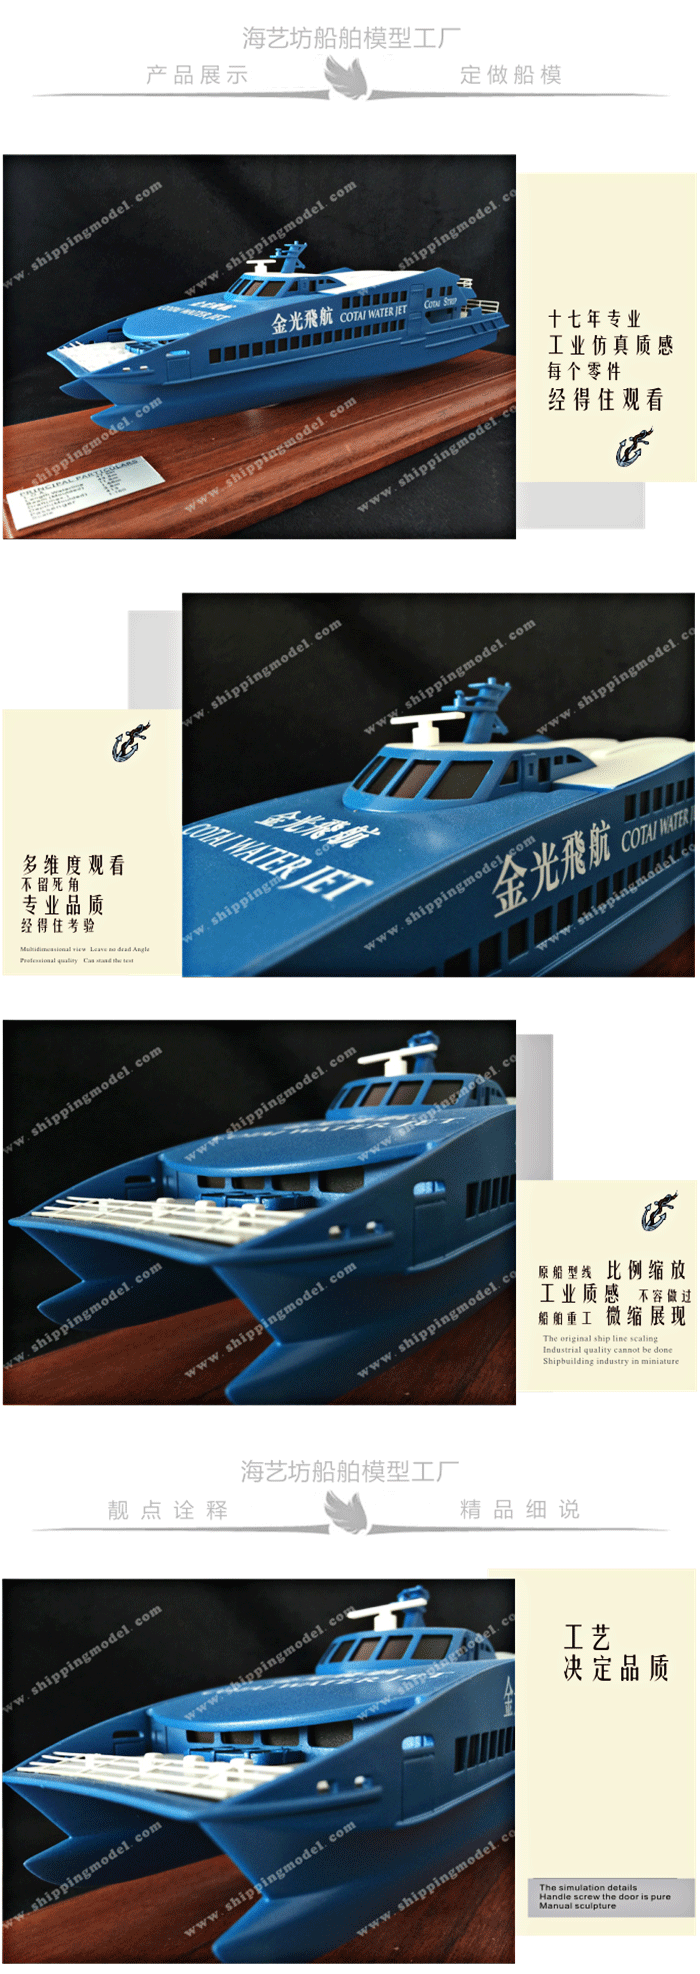 定制船模_30cm港澳渡轮模型定制_海艺坊模型工厂